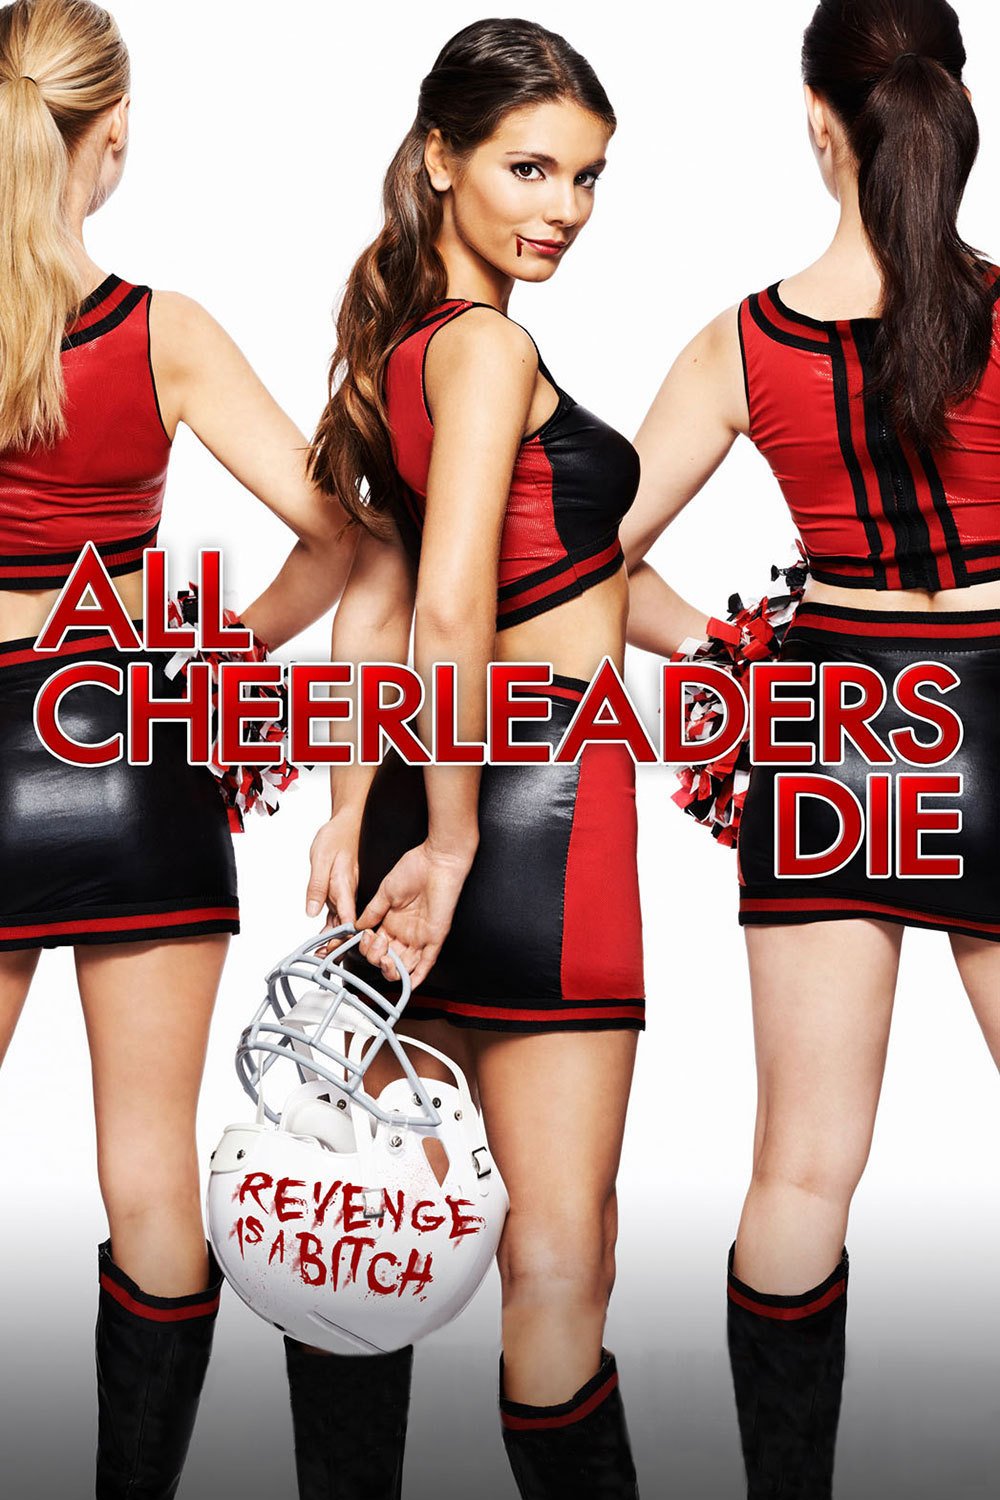 Poster of the movie All Cheerleaders Die